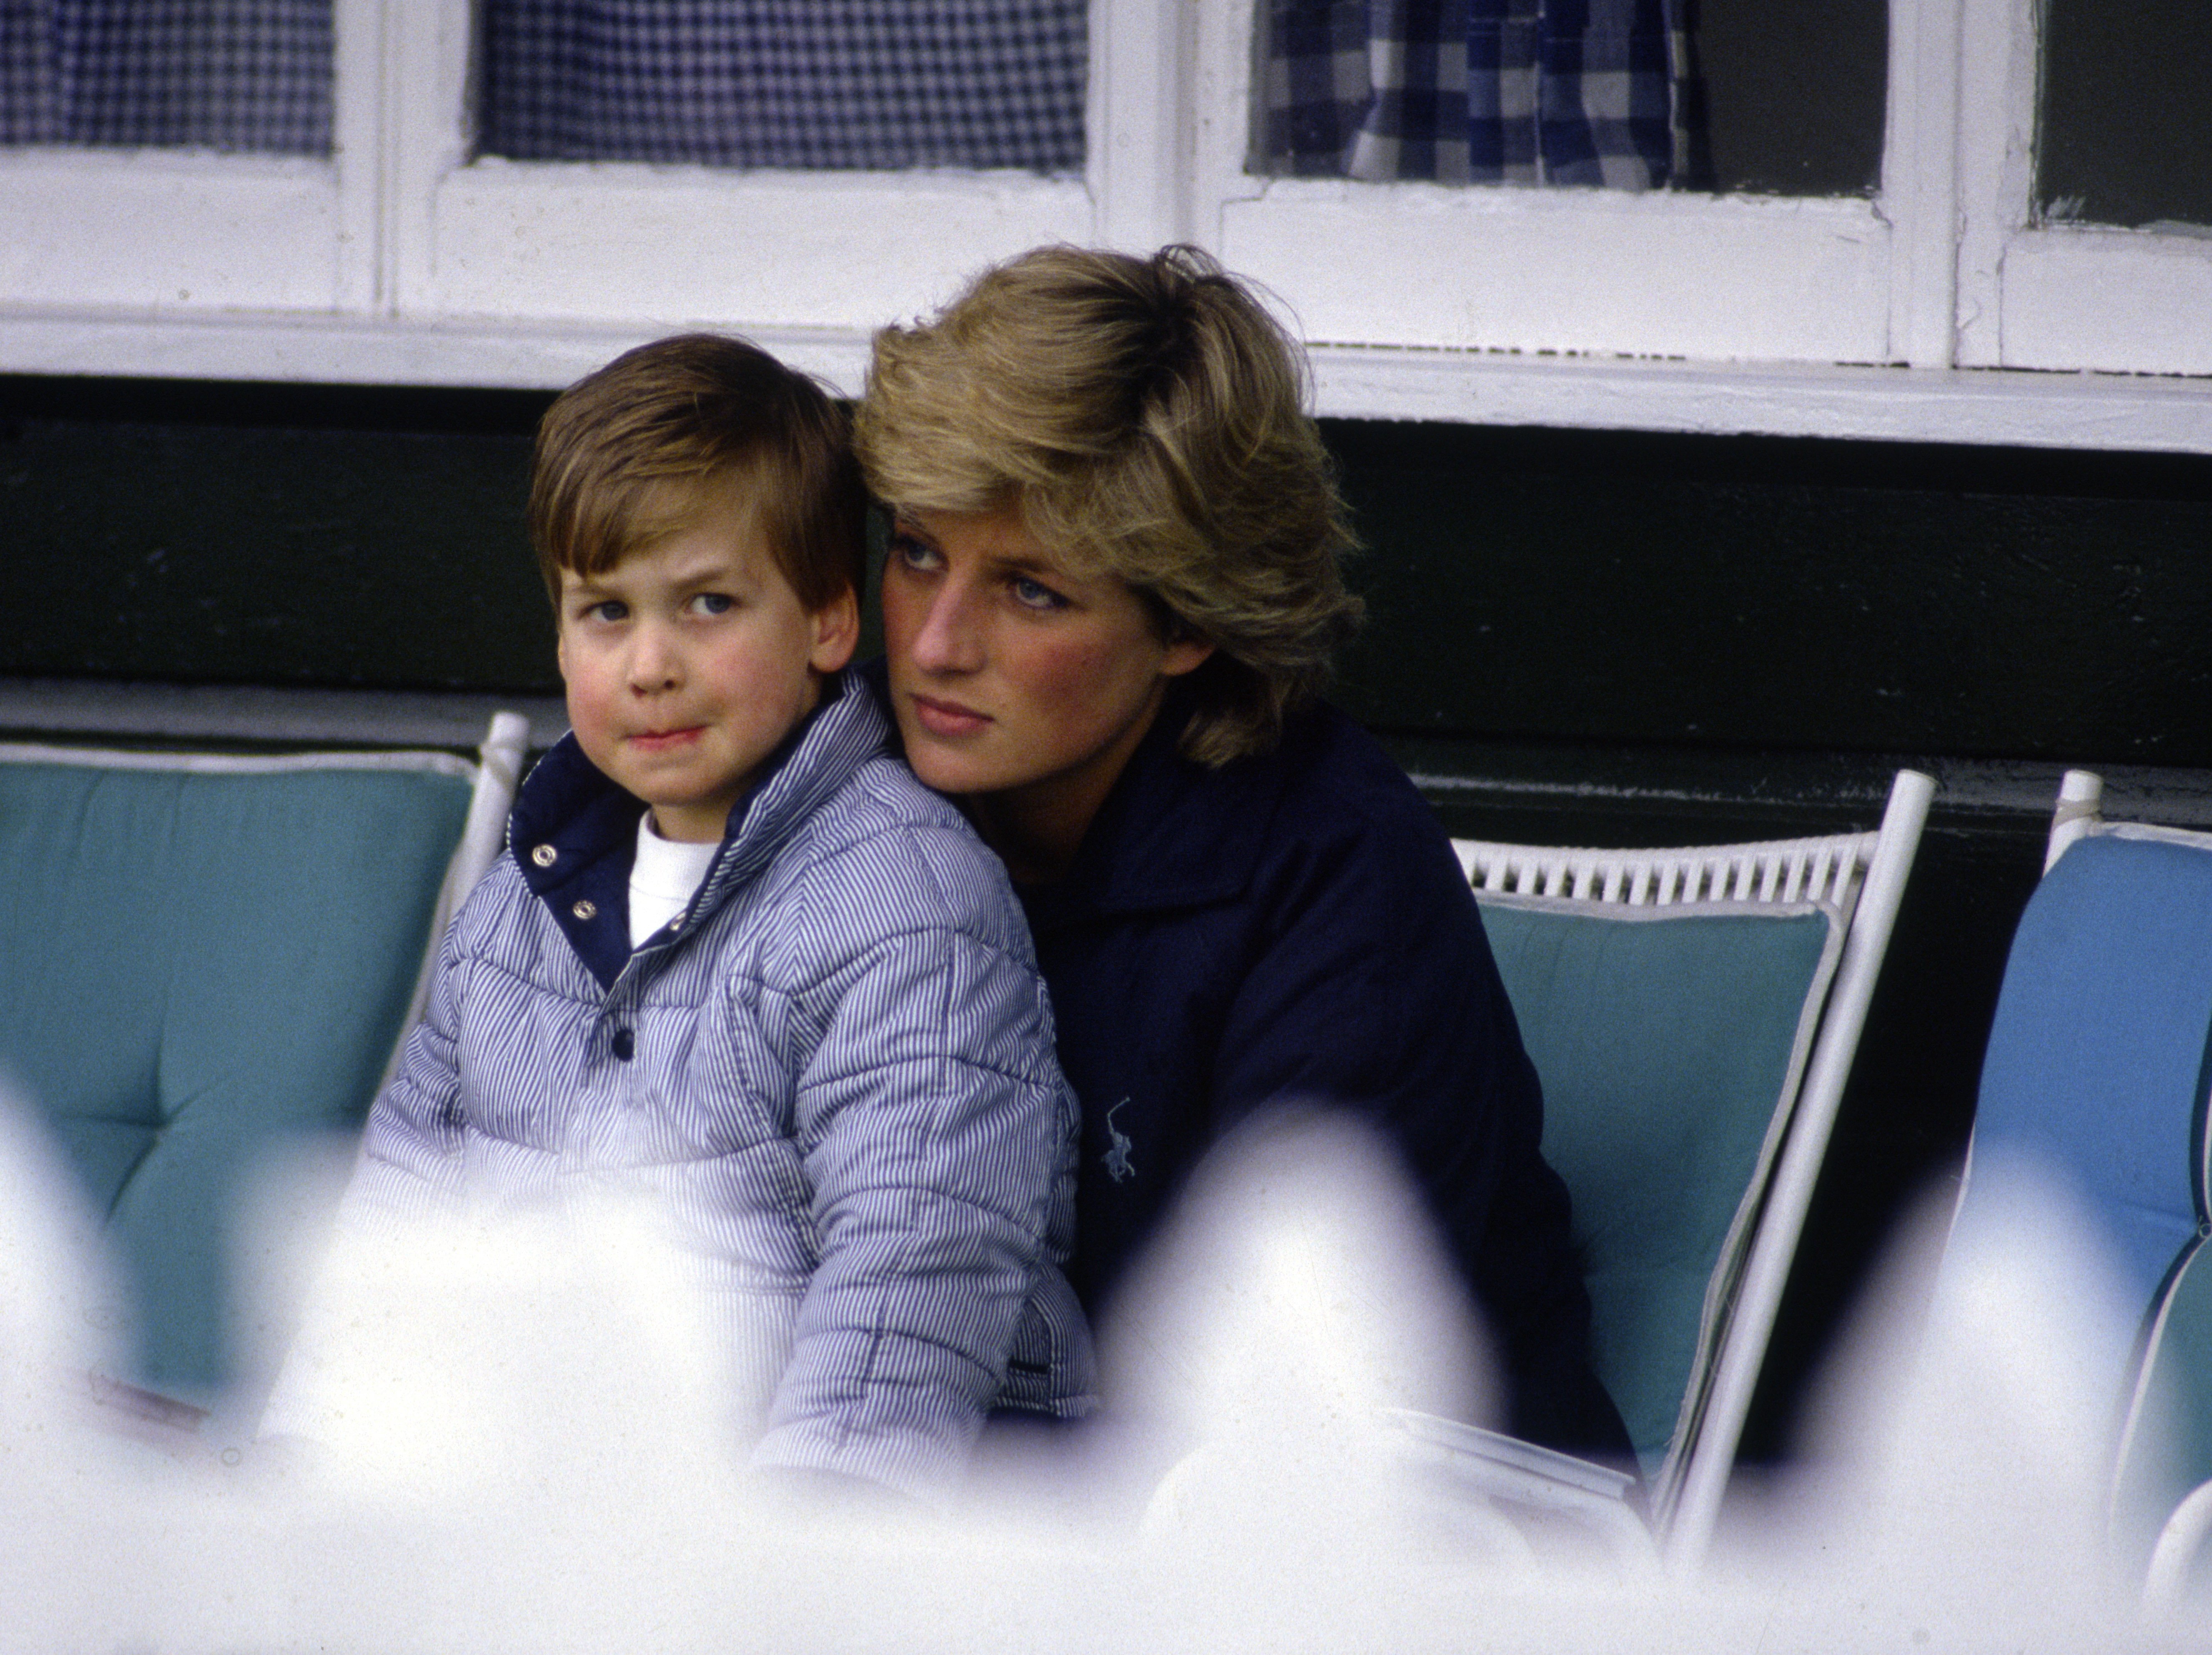 El príncipe William en el Guards Polo Club siendo abrazado por su madre, la princesa Diana. | Foto: Getty Images